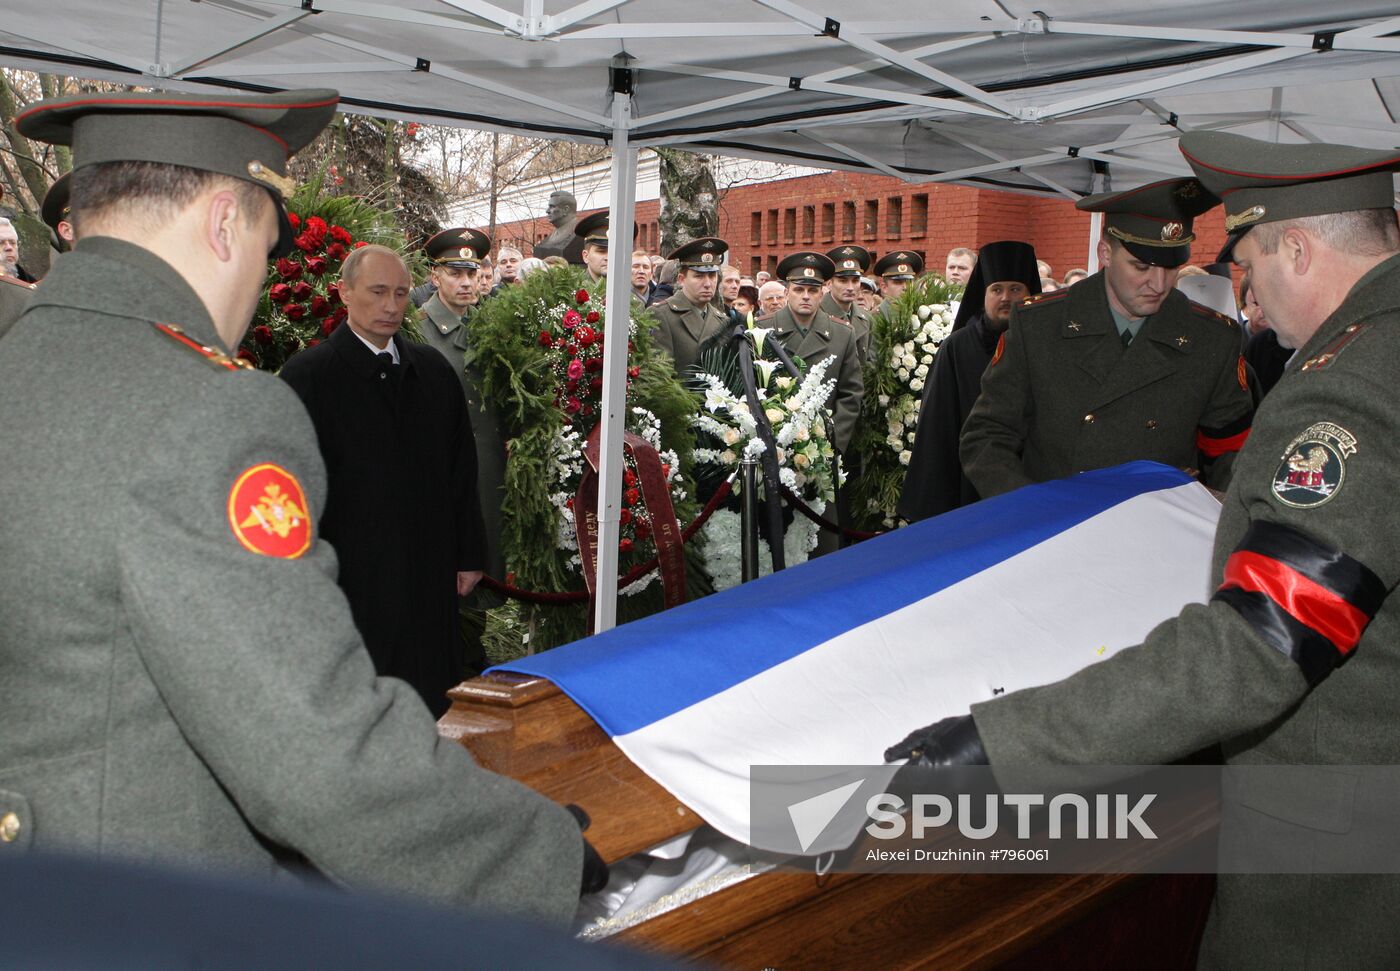 Vladimir Putin attends funeral service for Viktor Chernomyrdin